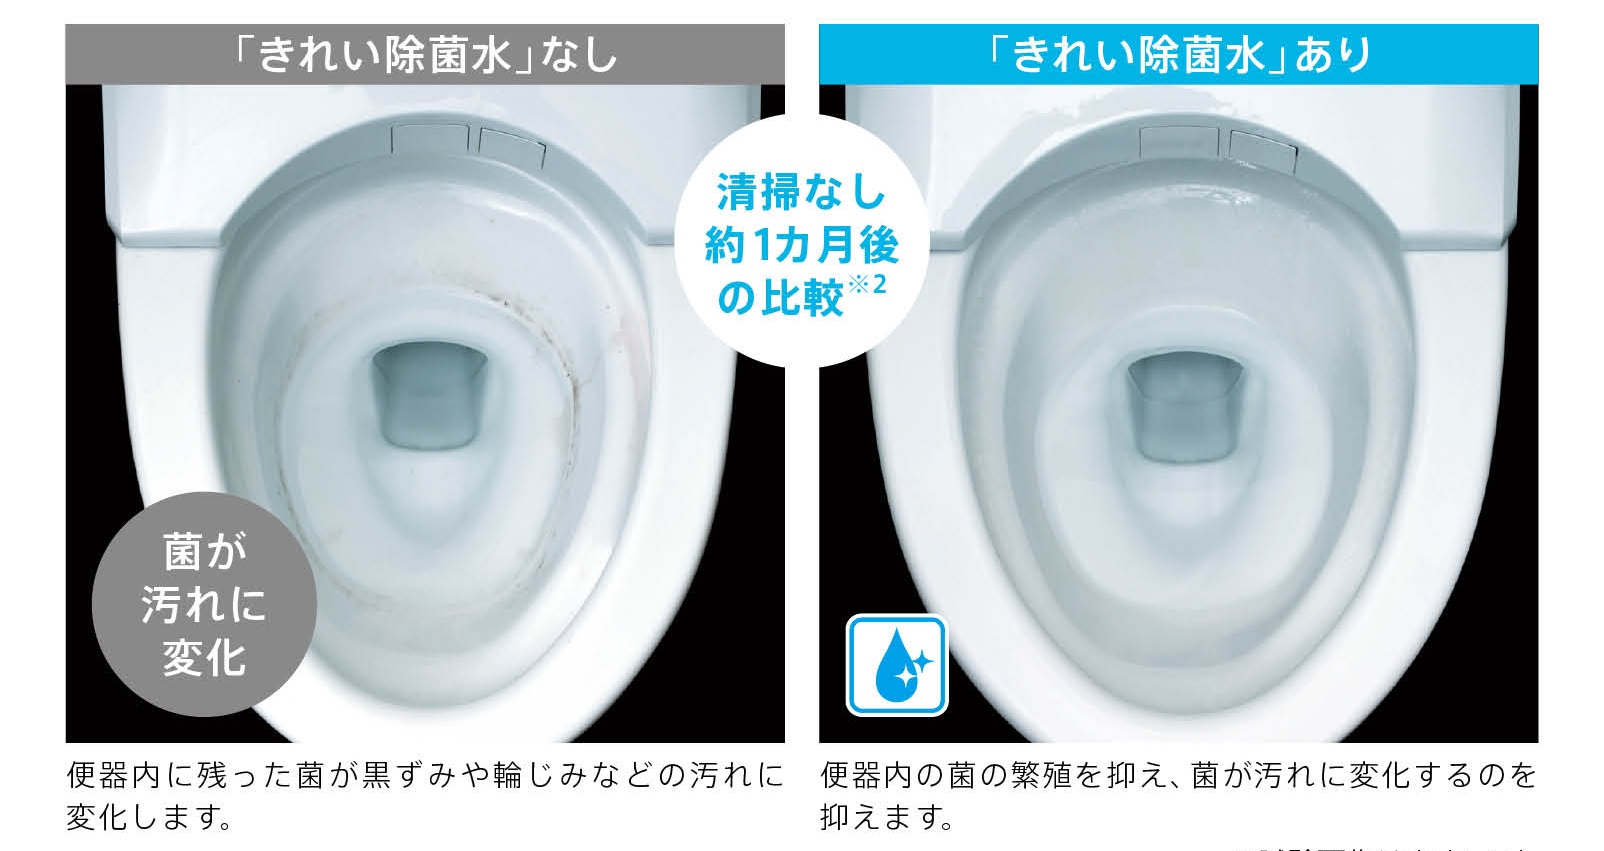 きれい除菌水はトイレの掃除回数を減らせます